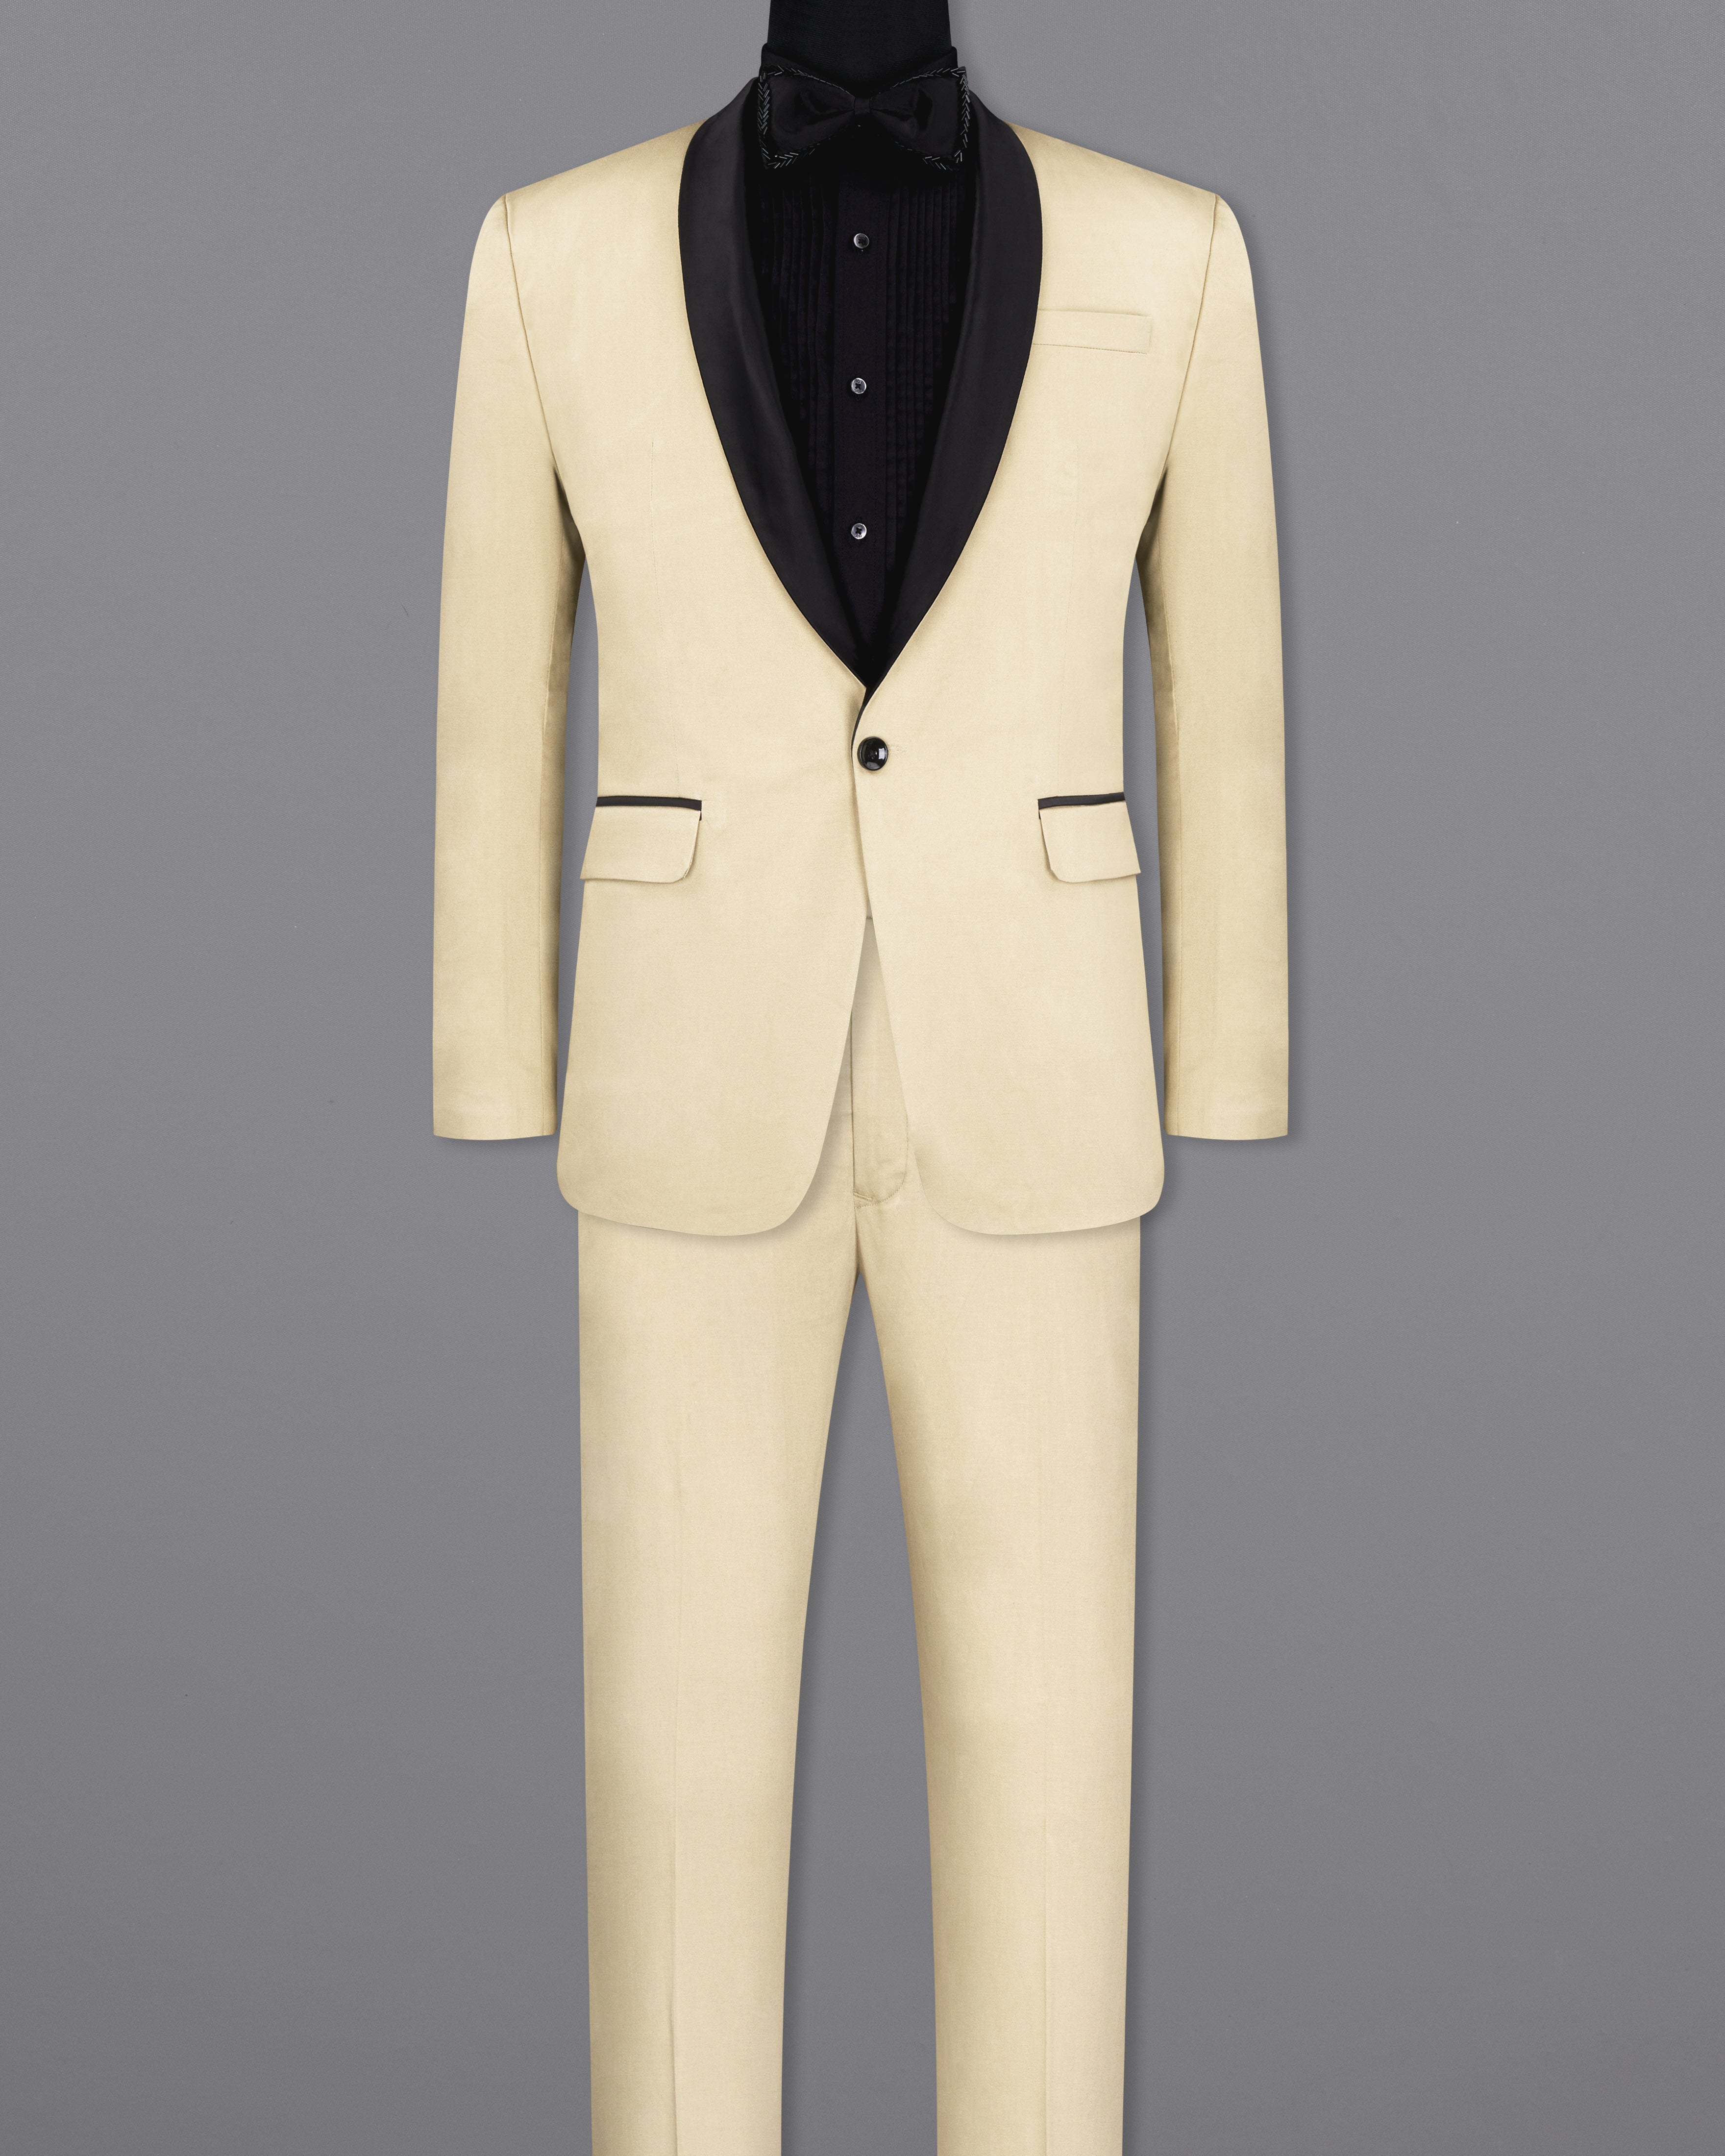 Bojoni Ravenna Slim Fit Plaid Beige Woolen Combination Suit | BOJONI